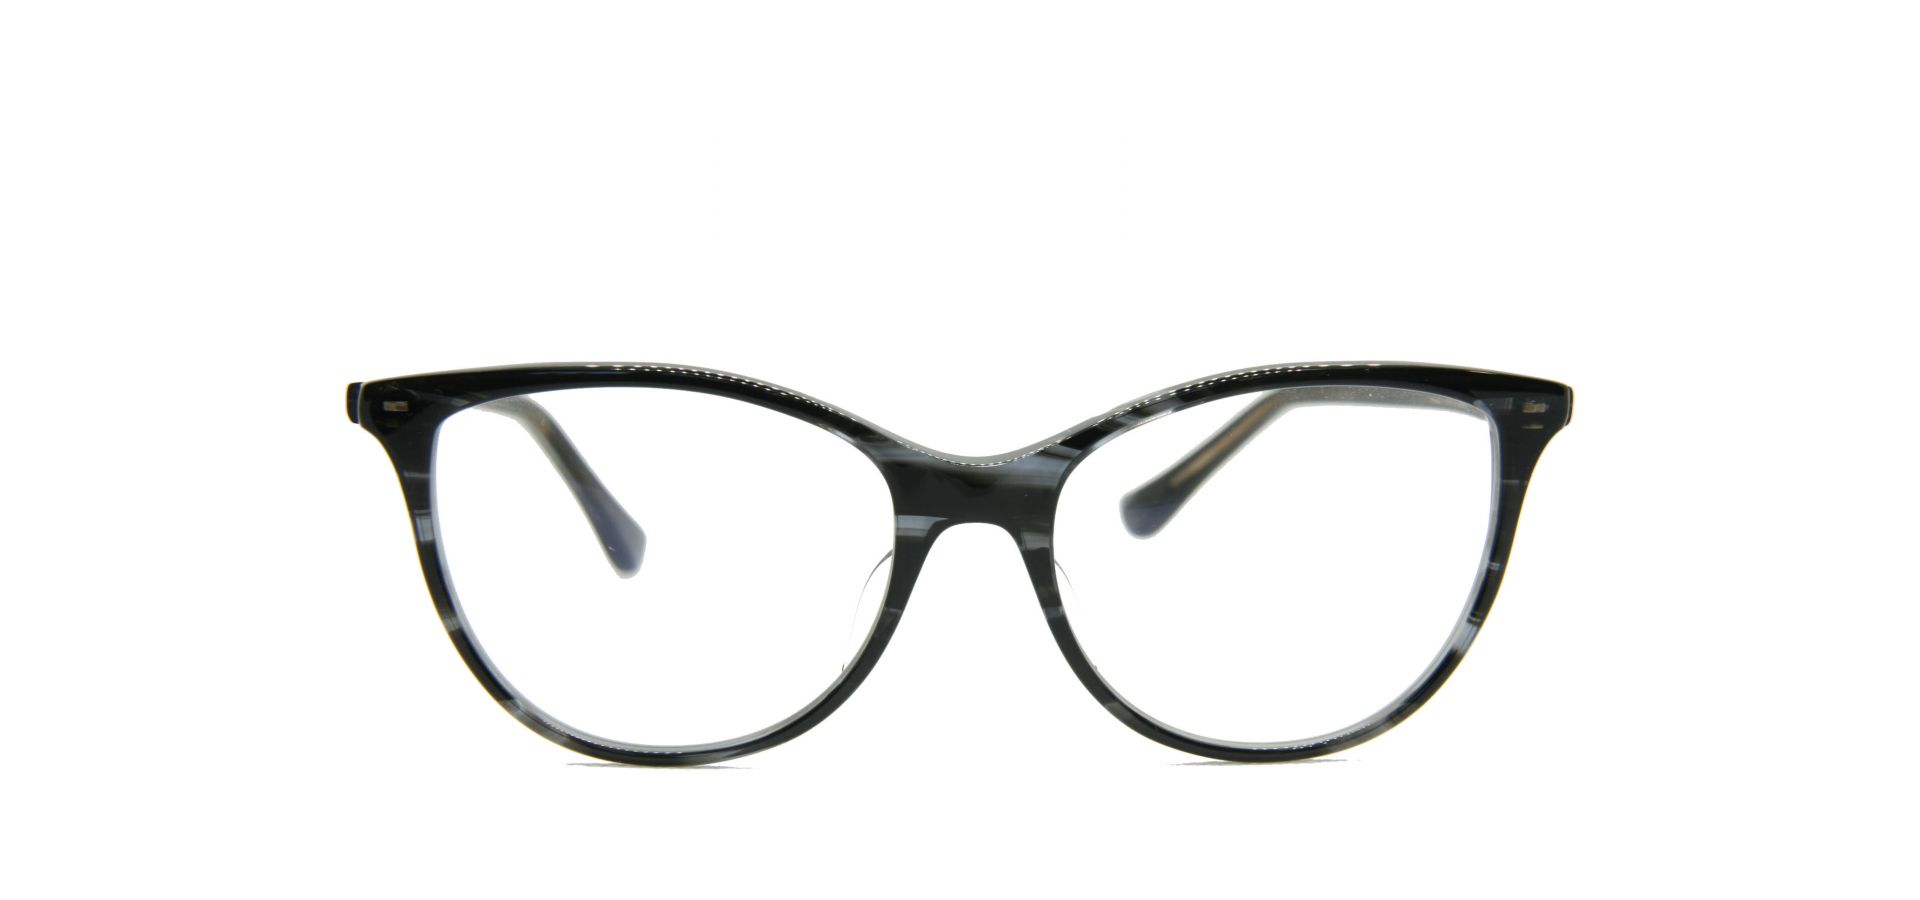 Korekcijska očala Dita DAYDREAMER SMOKE CRYSTAL: Velikost: 53/145/17, Spol: ženska, Material: acetat